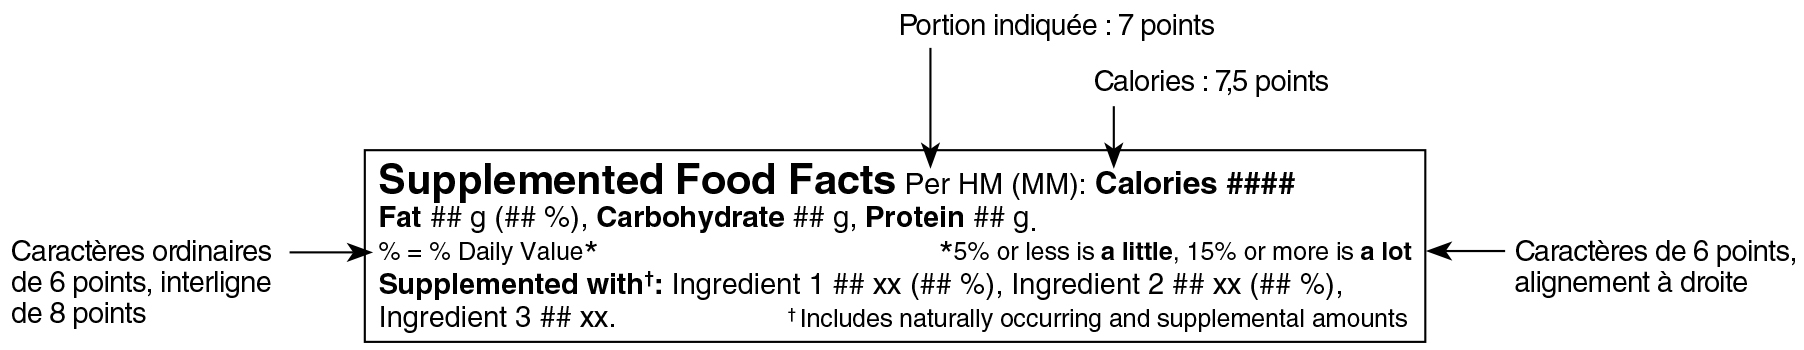 Modèle linéaire simplifié anglais du tableau des renseignements sur les aliments supplémentés avec indications. Version texte ci-dessous.